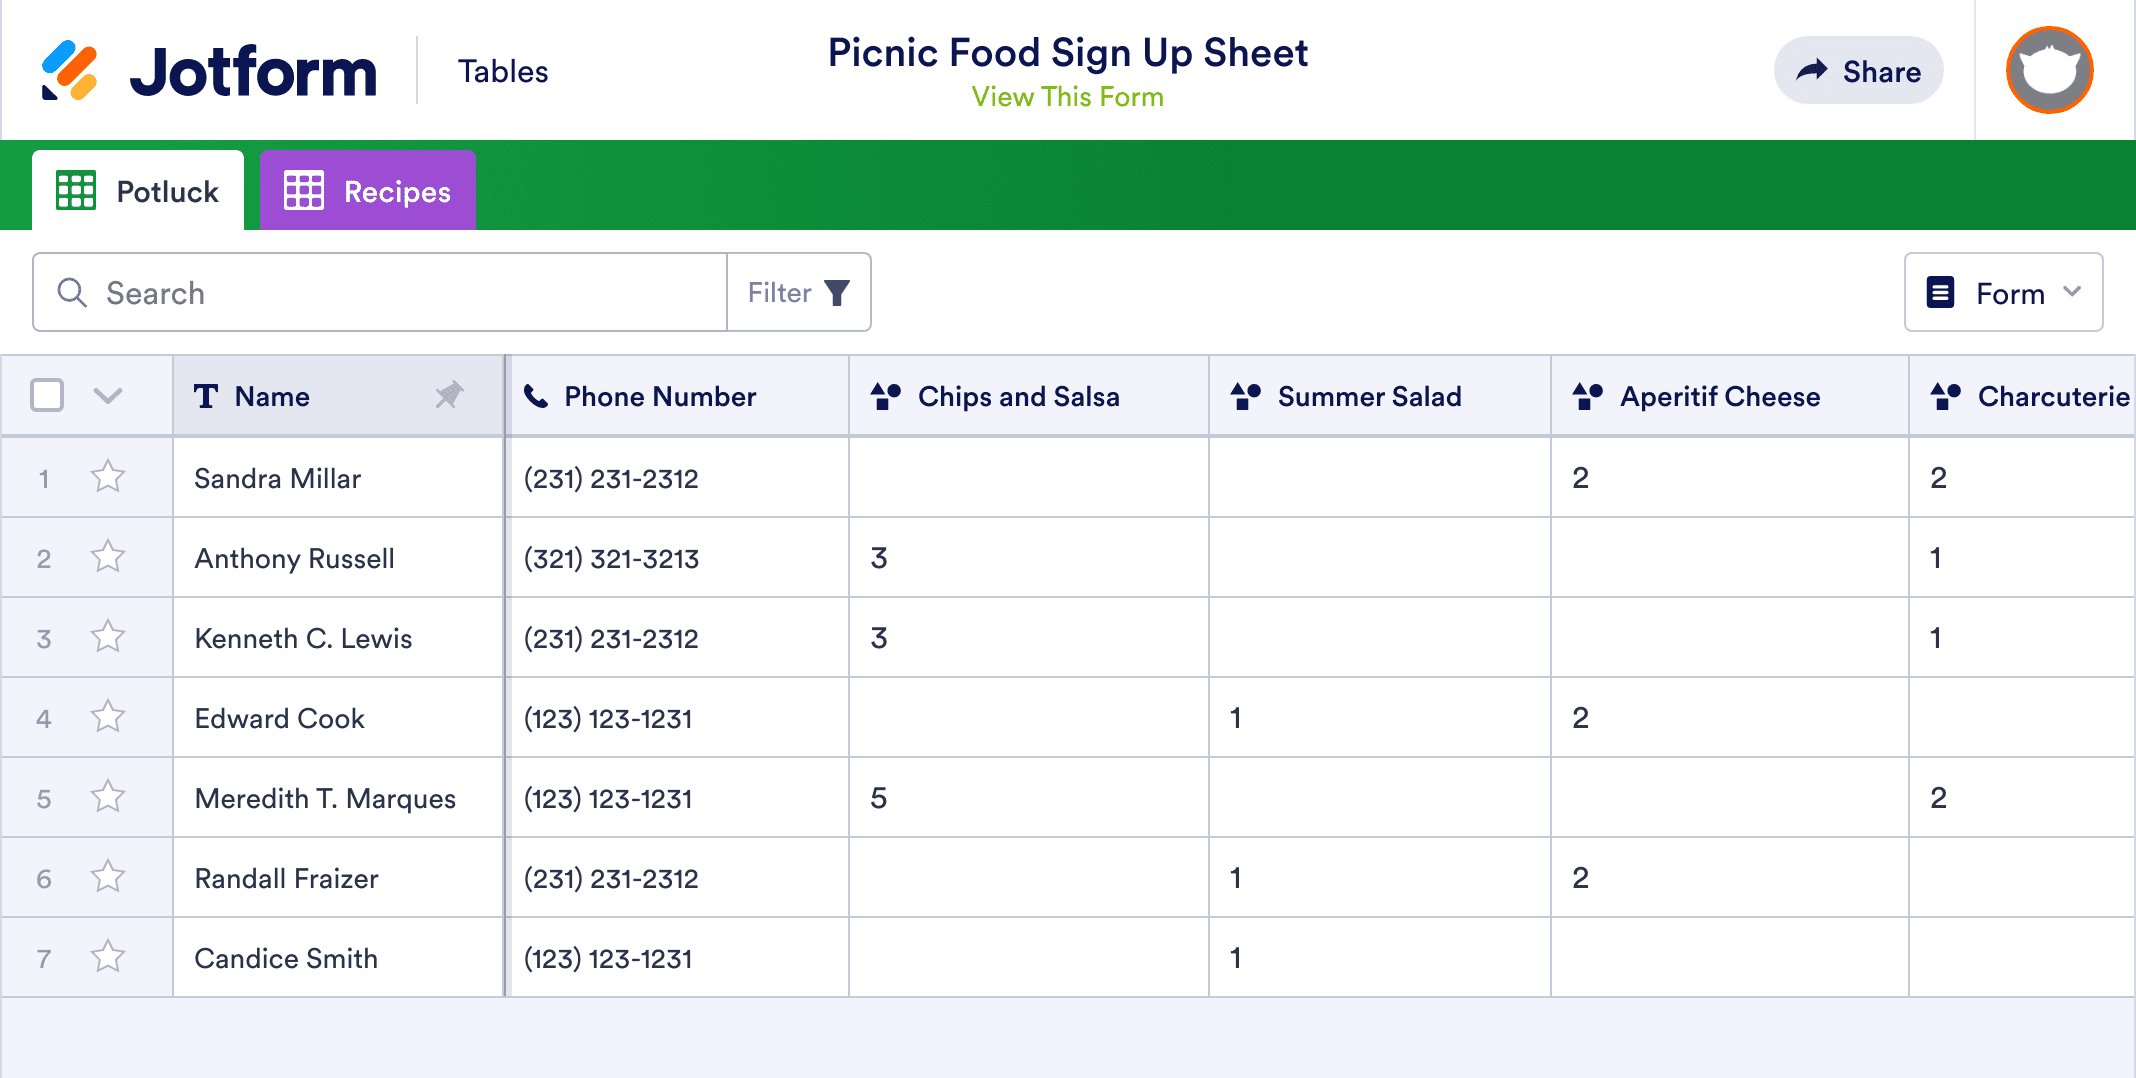 Picnic Food Sign Up Sheet